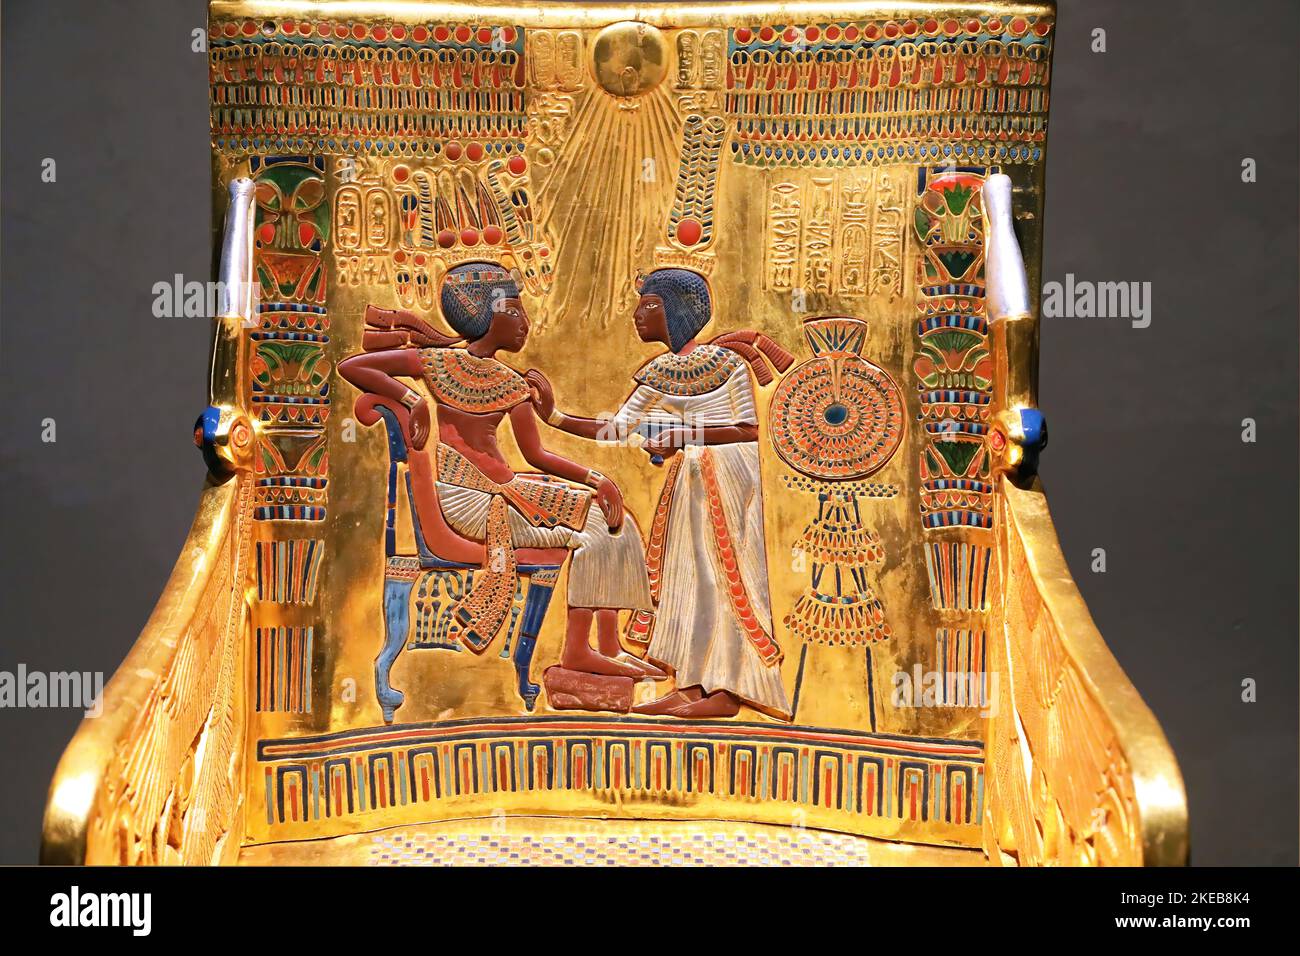 Copia de la increíble espalda del trono que se encuentra en la tumba de Tutankhamon Foto de stock